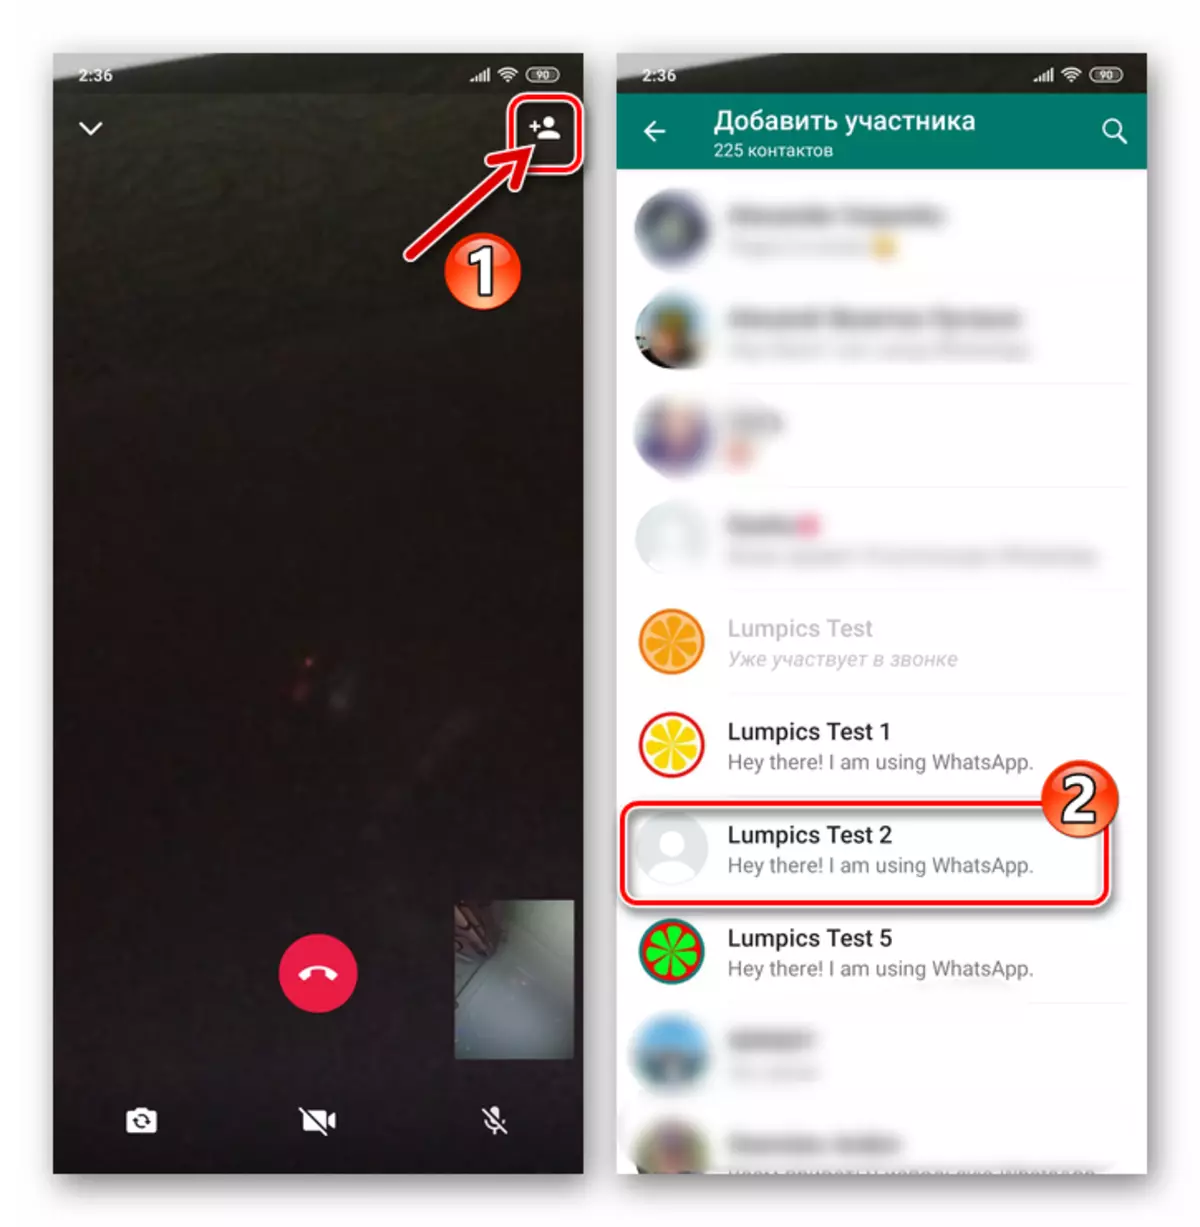 WhatsApp per a Android Habilita el contacte al procés de vídeo de vídeo a través del missatger